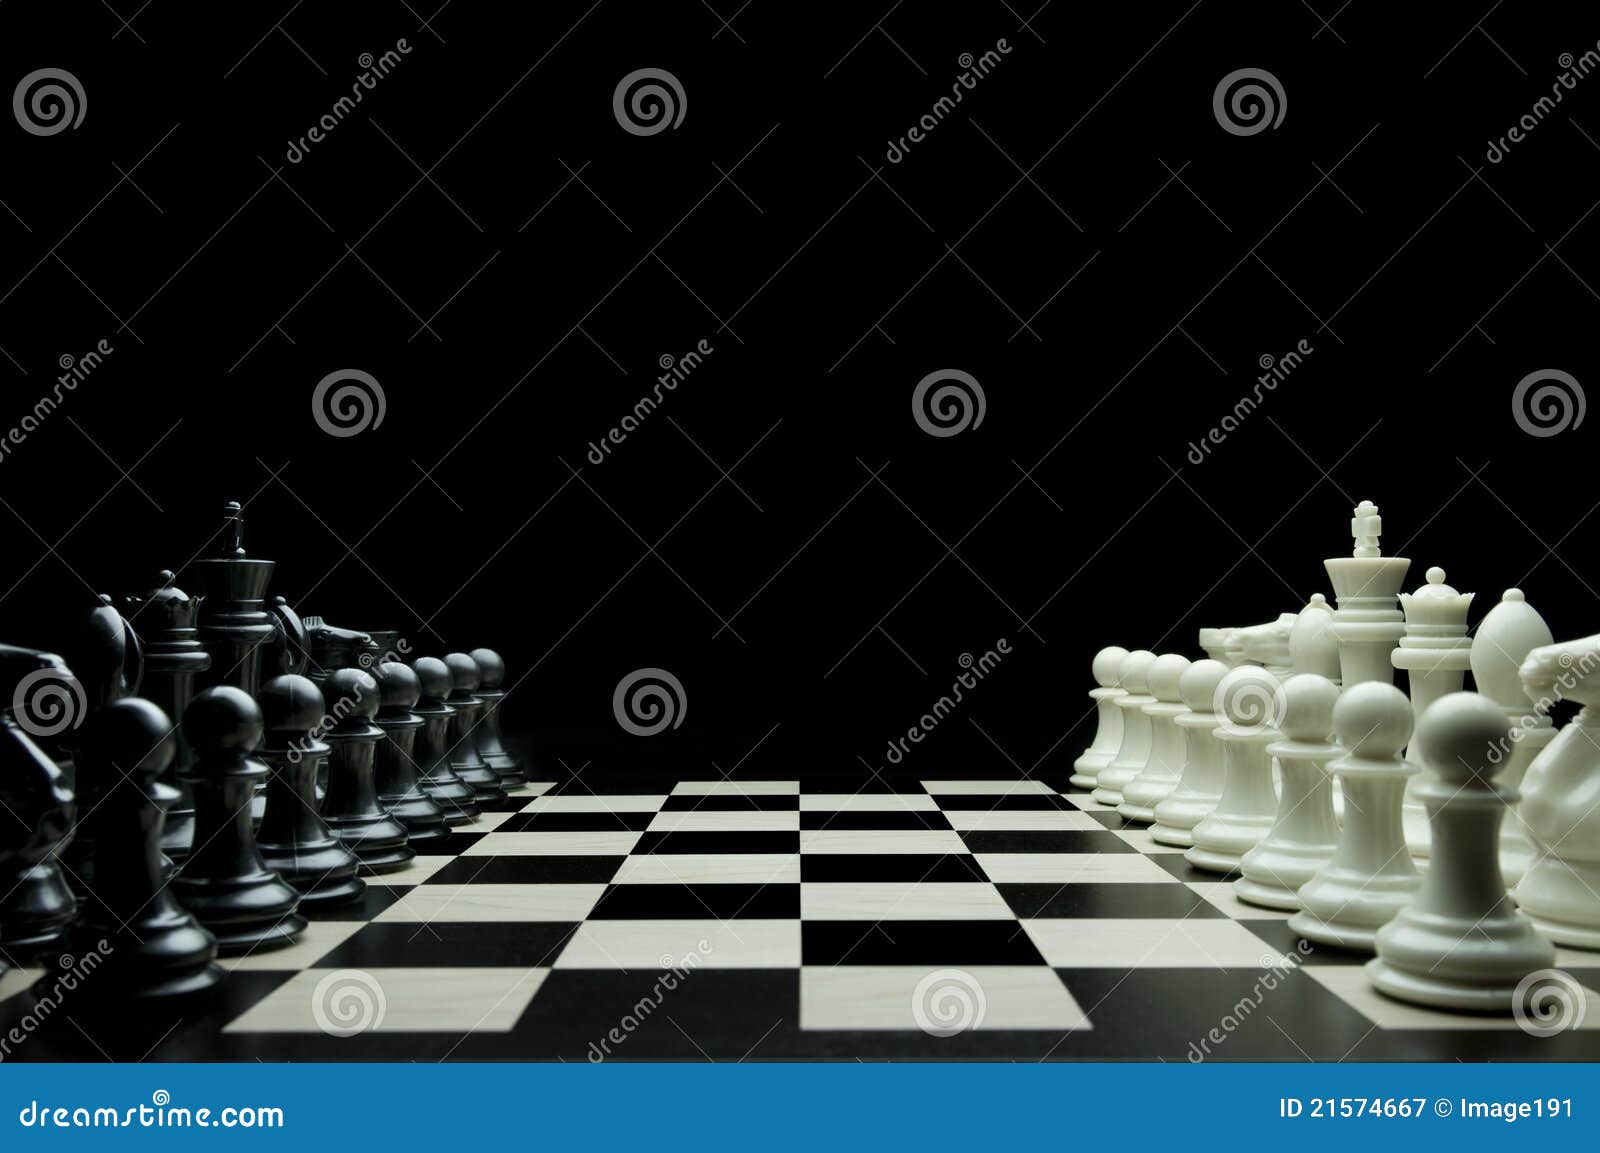 Jogo de xadrez chinês imagem de stock. Imagem de tradicional - 7070681